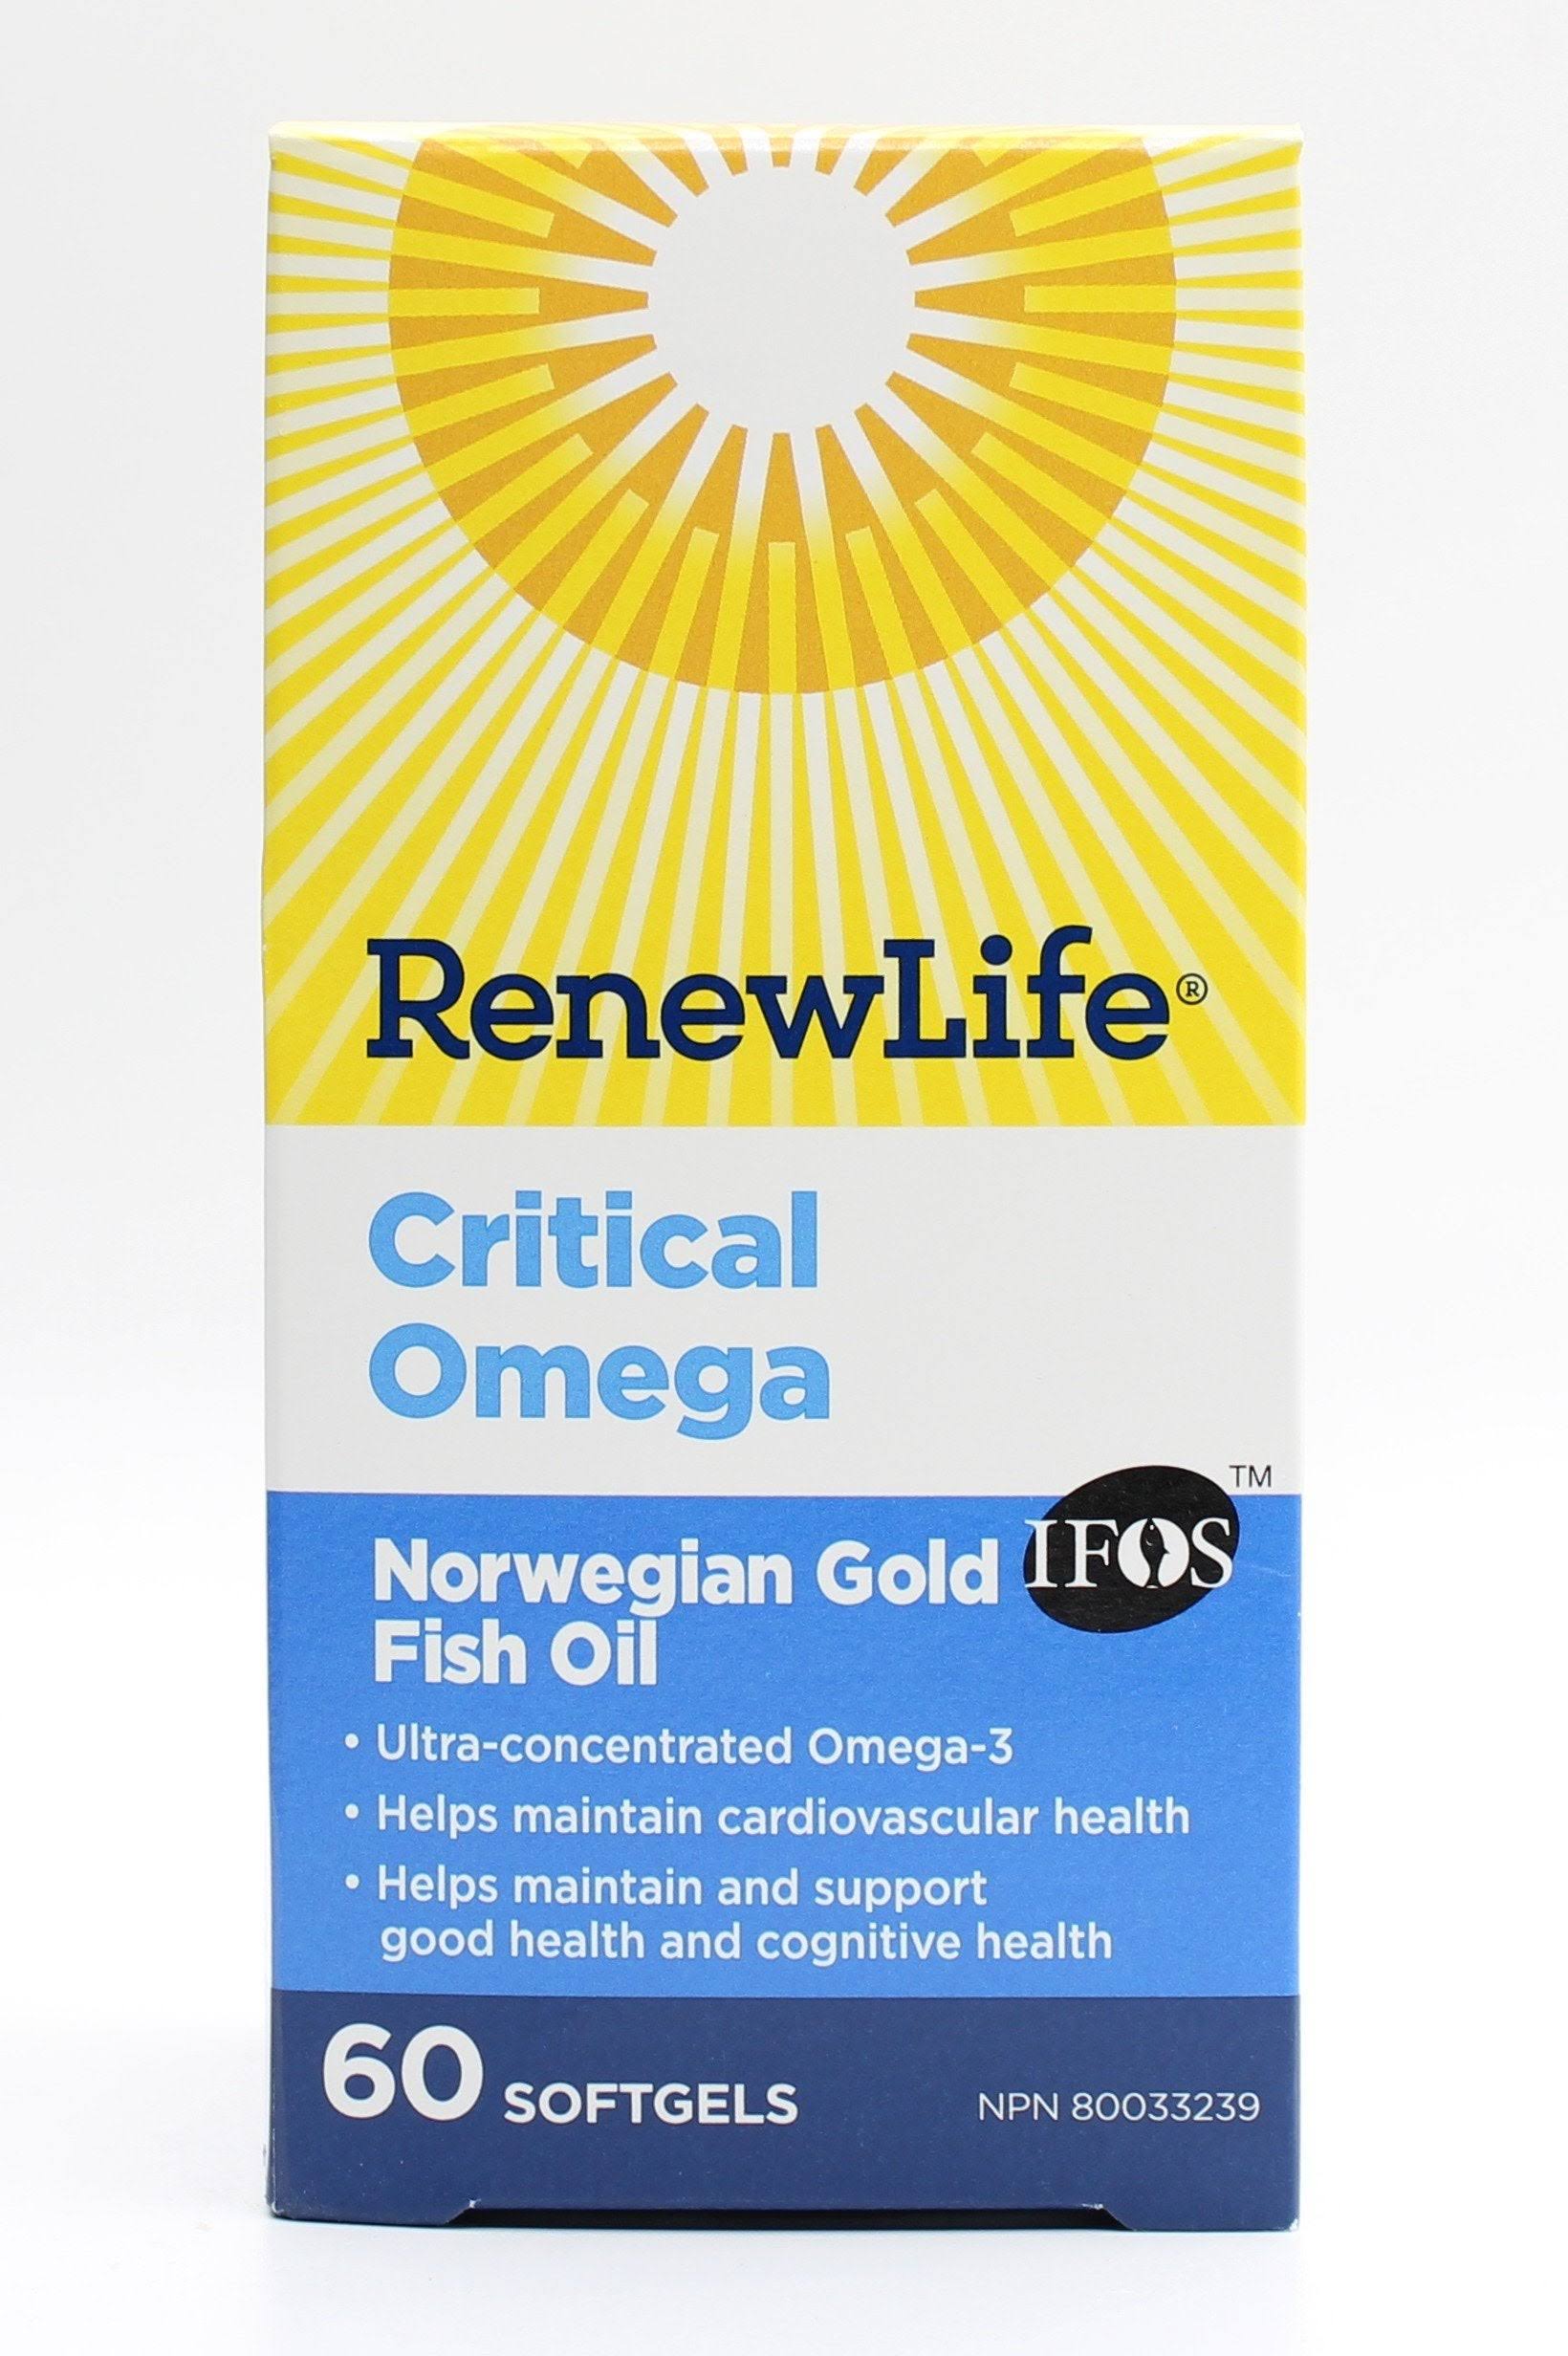 Norwegian Gold Critical Omega Renew Life 60 Softgel